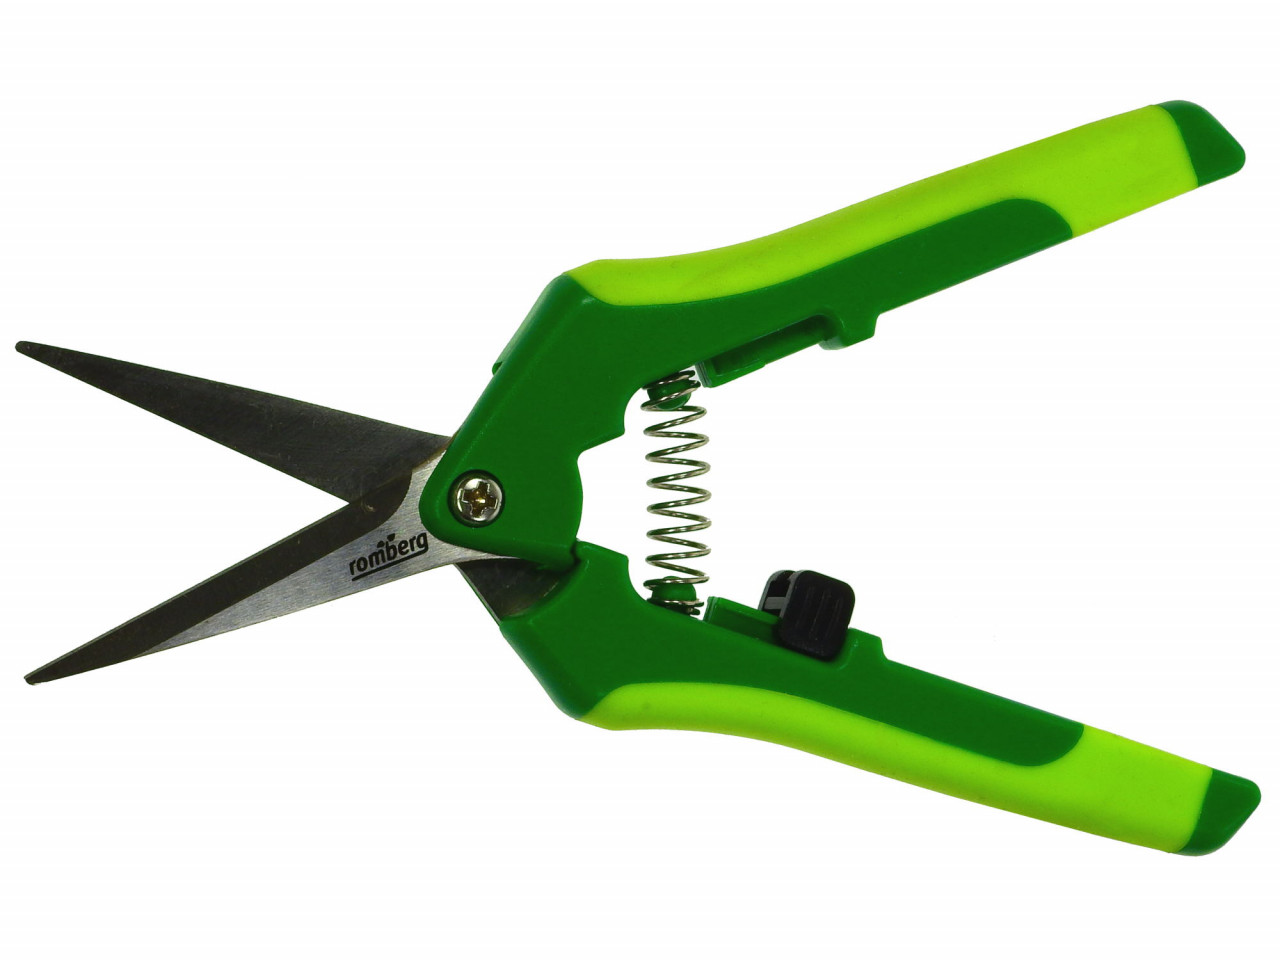 ROMBERG crop scissors 'easy'